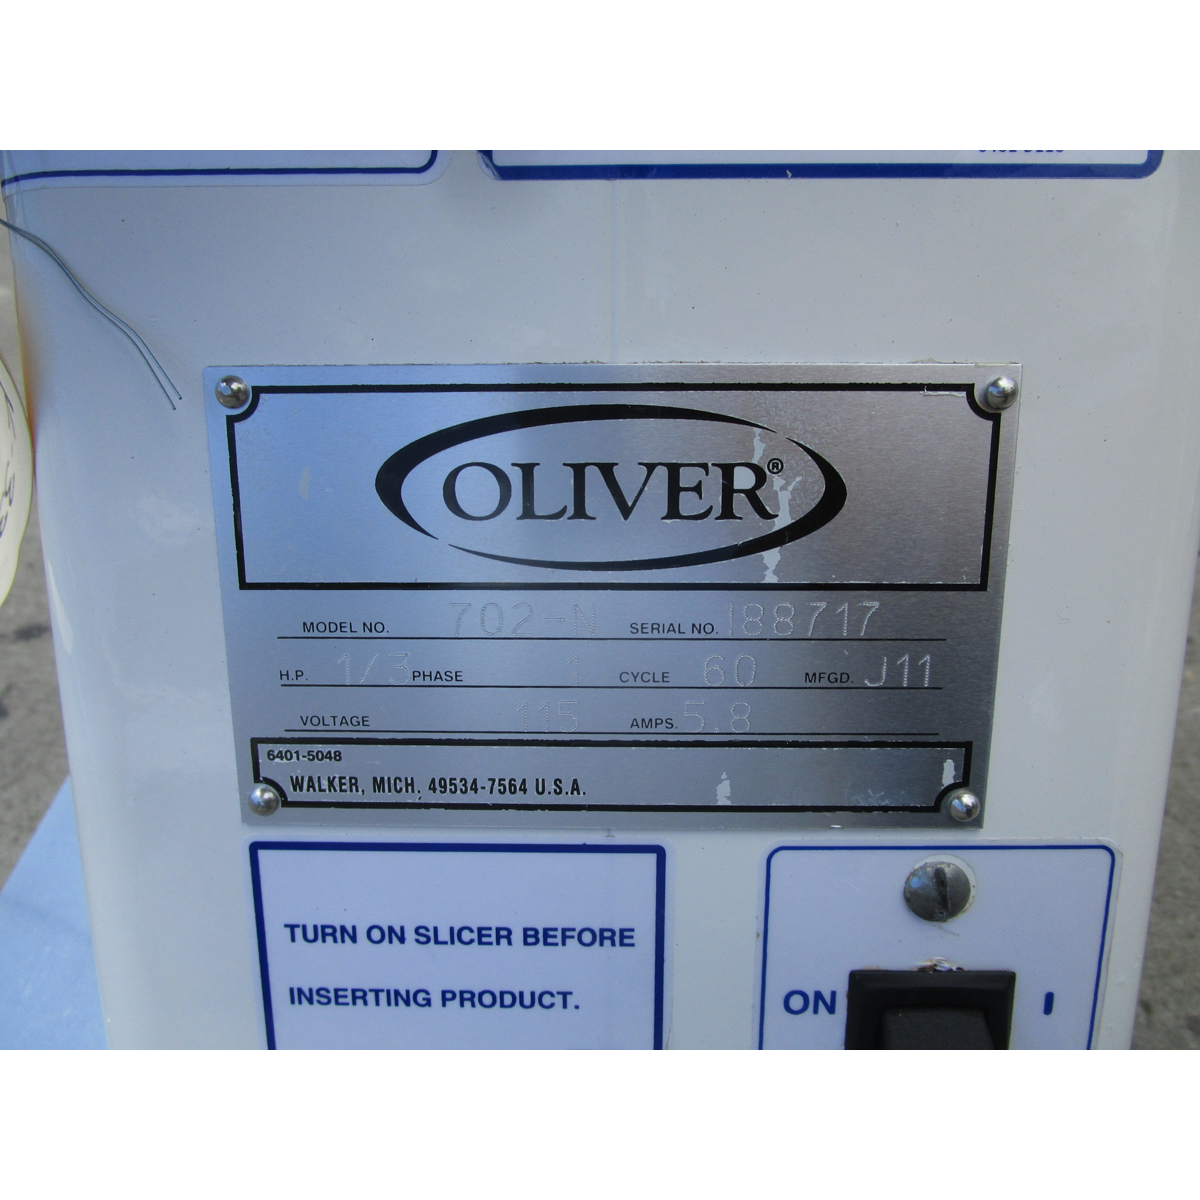 Oliver 702N Bagel Slicer with Return Slide, Used Excellent Condition image 2